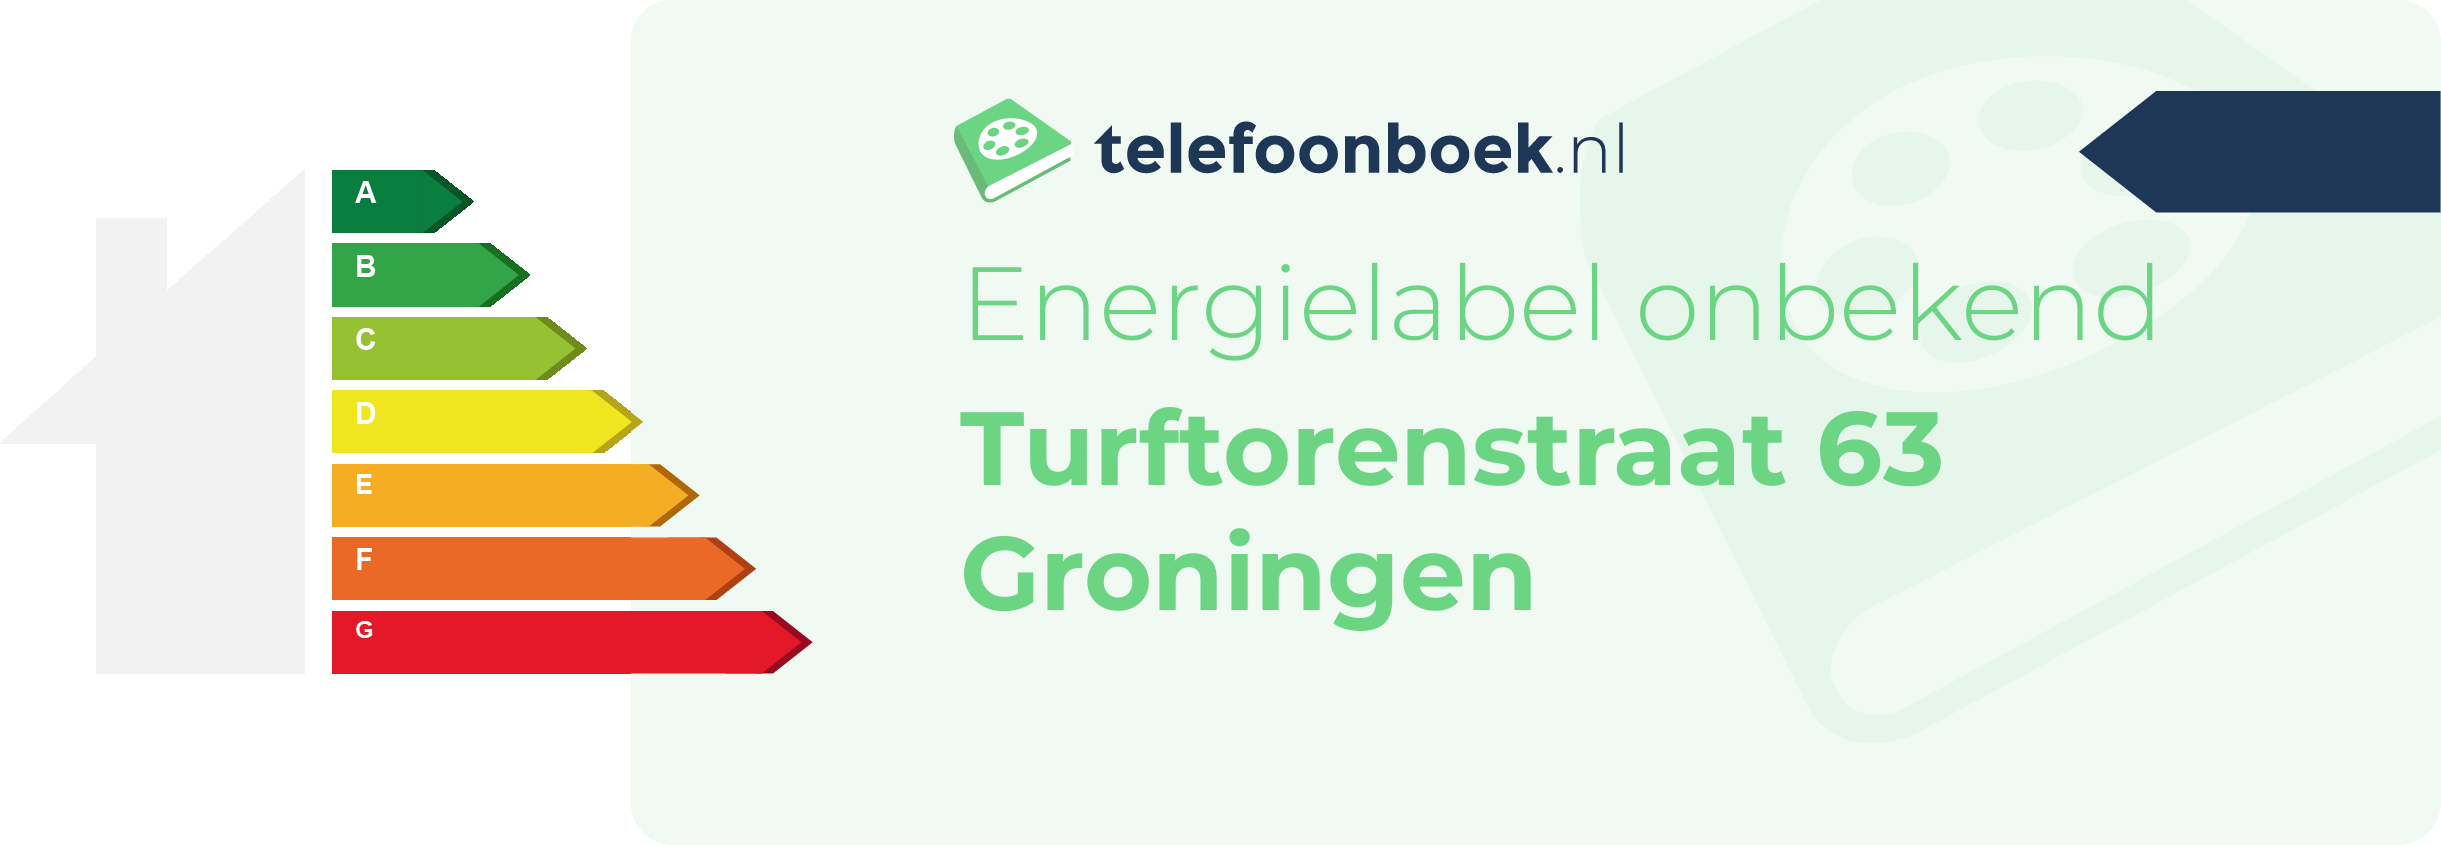 Energielabel Turftorenstraat 63 Groningen